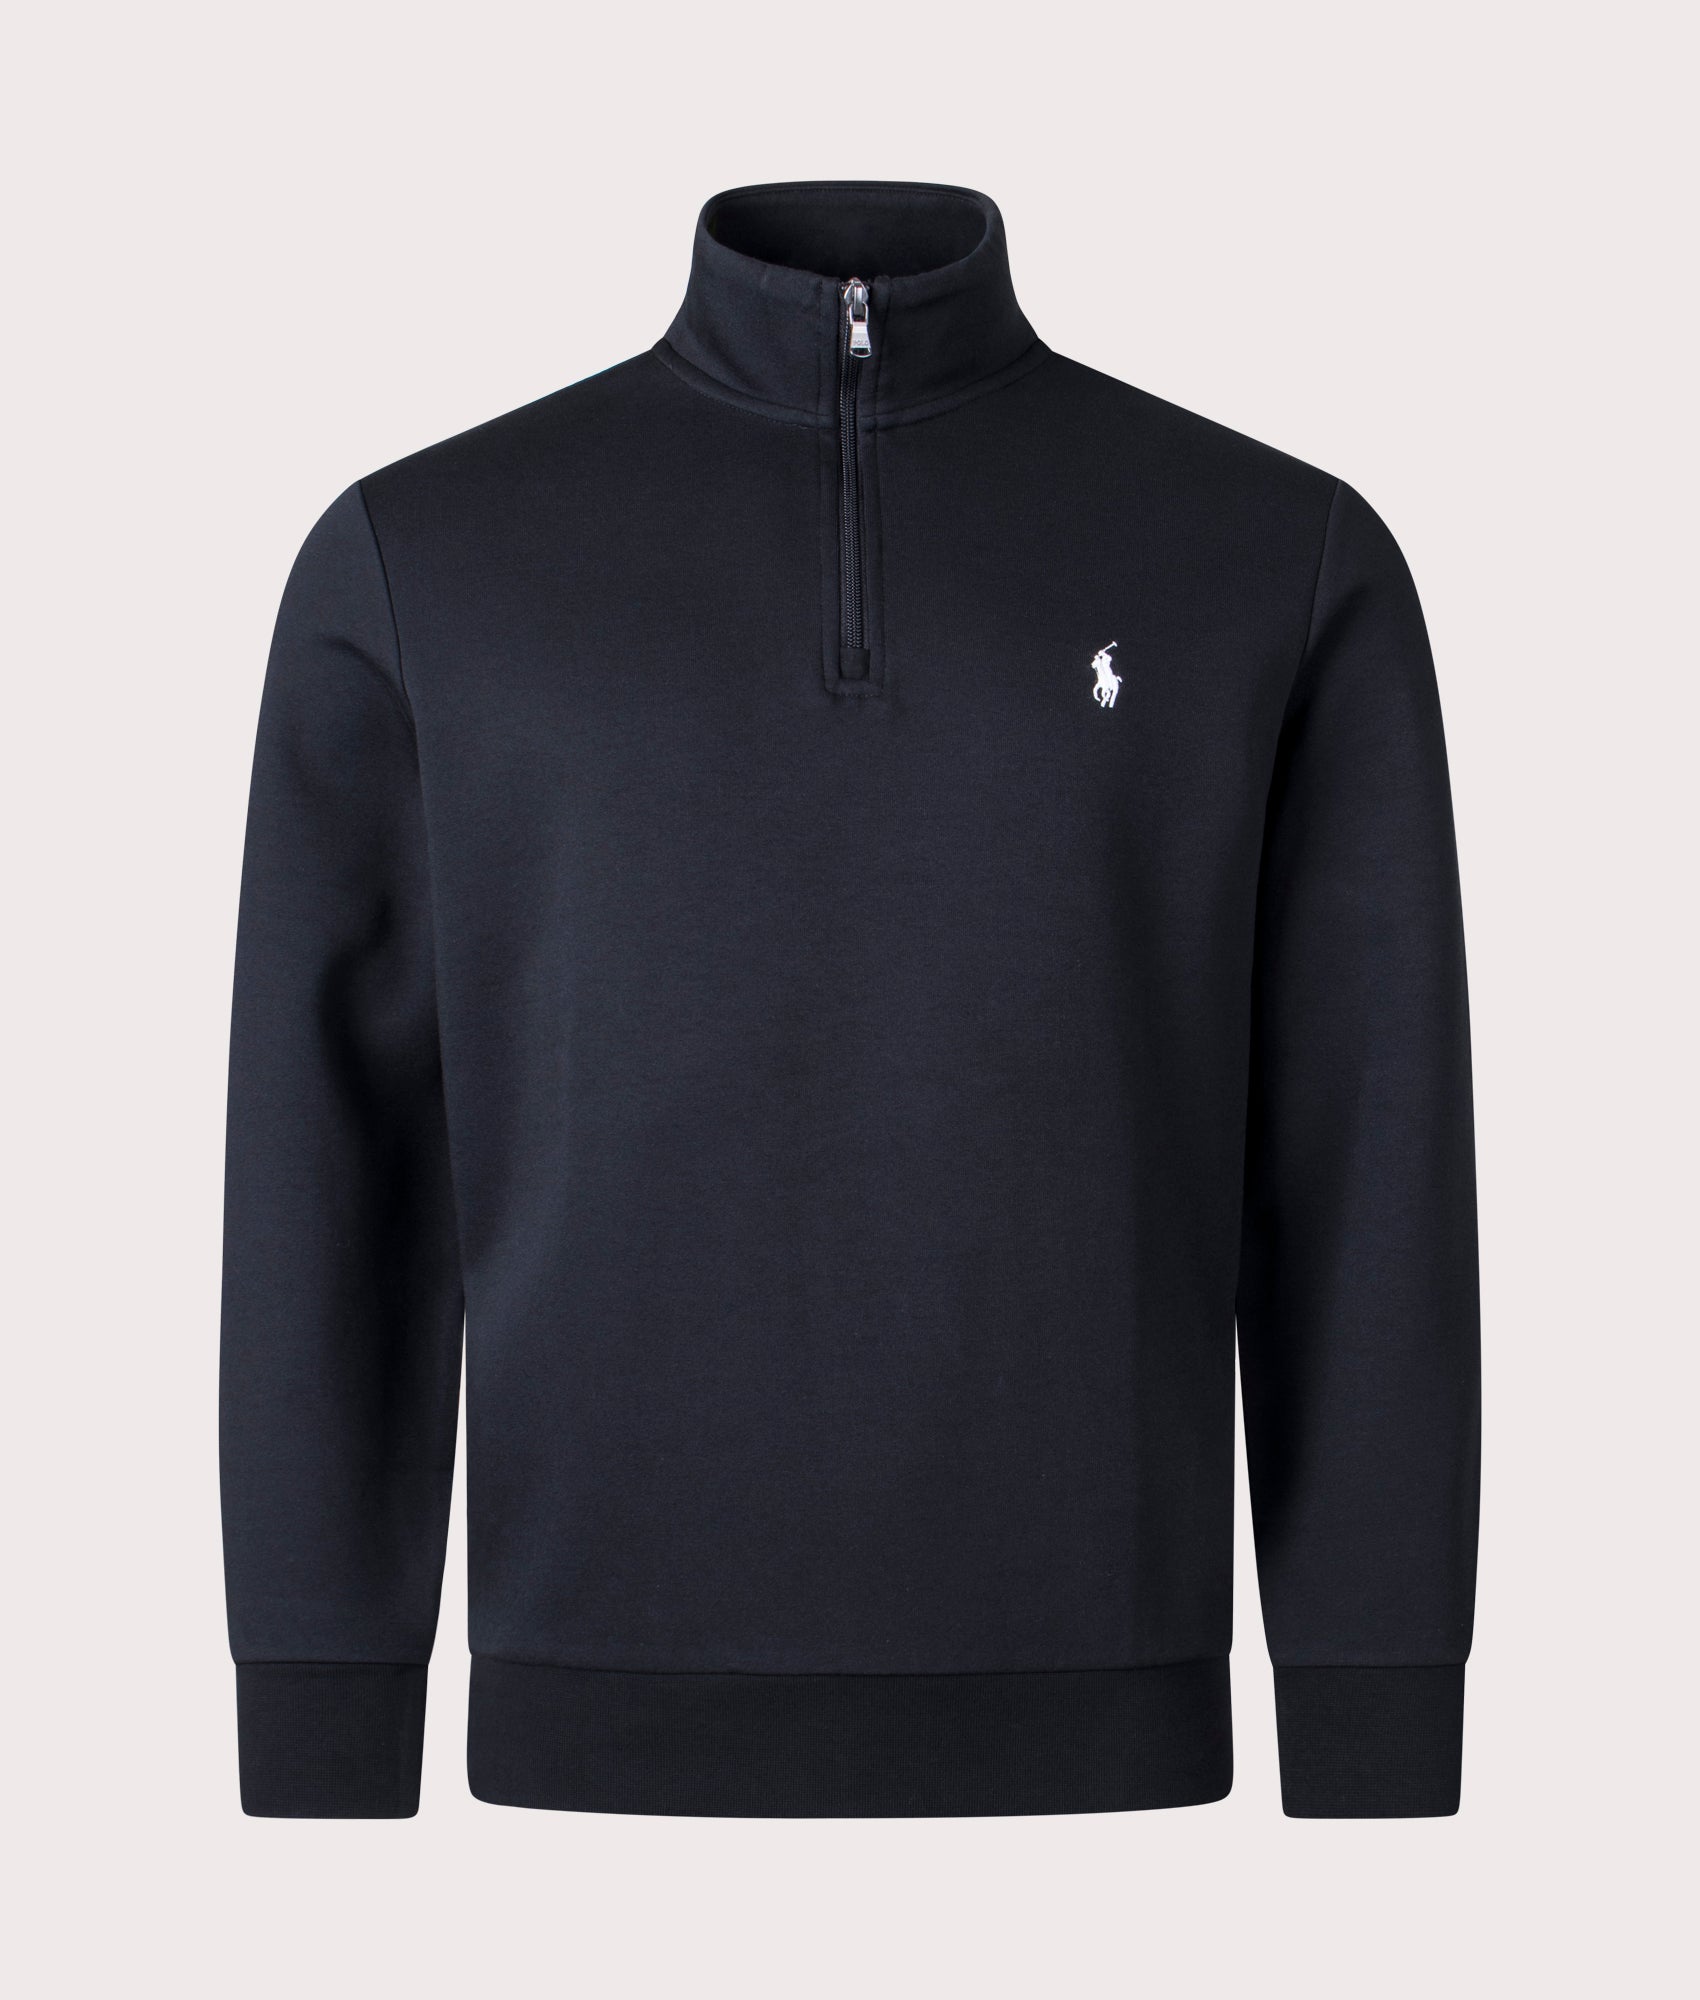 Polo Ralph Lauren Mens Quarter Zip Sweatshirt - Colour: 001 Polo Black - Size: XXL